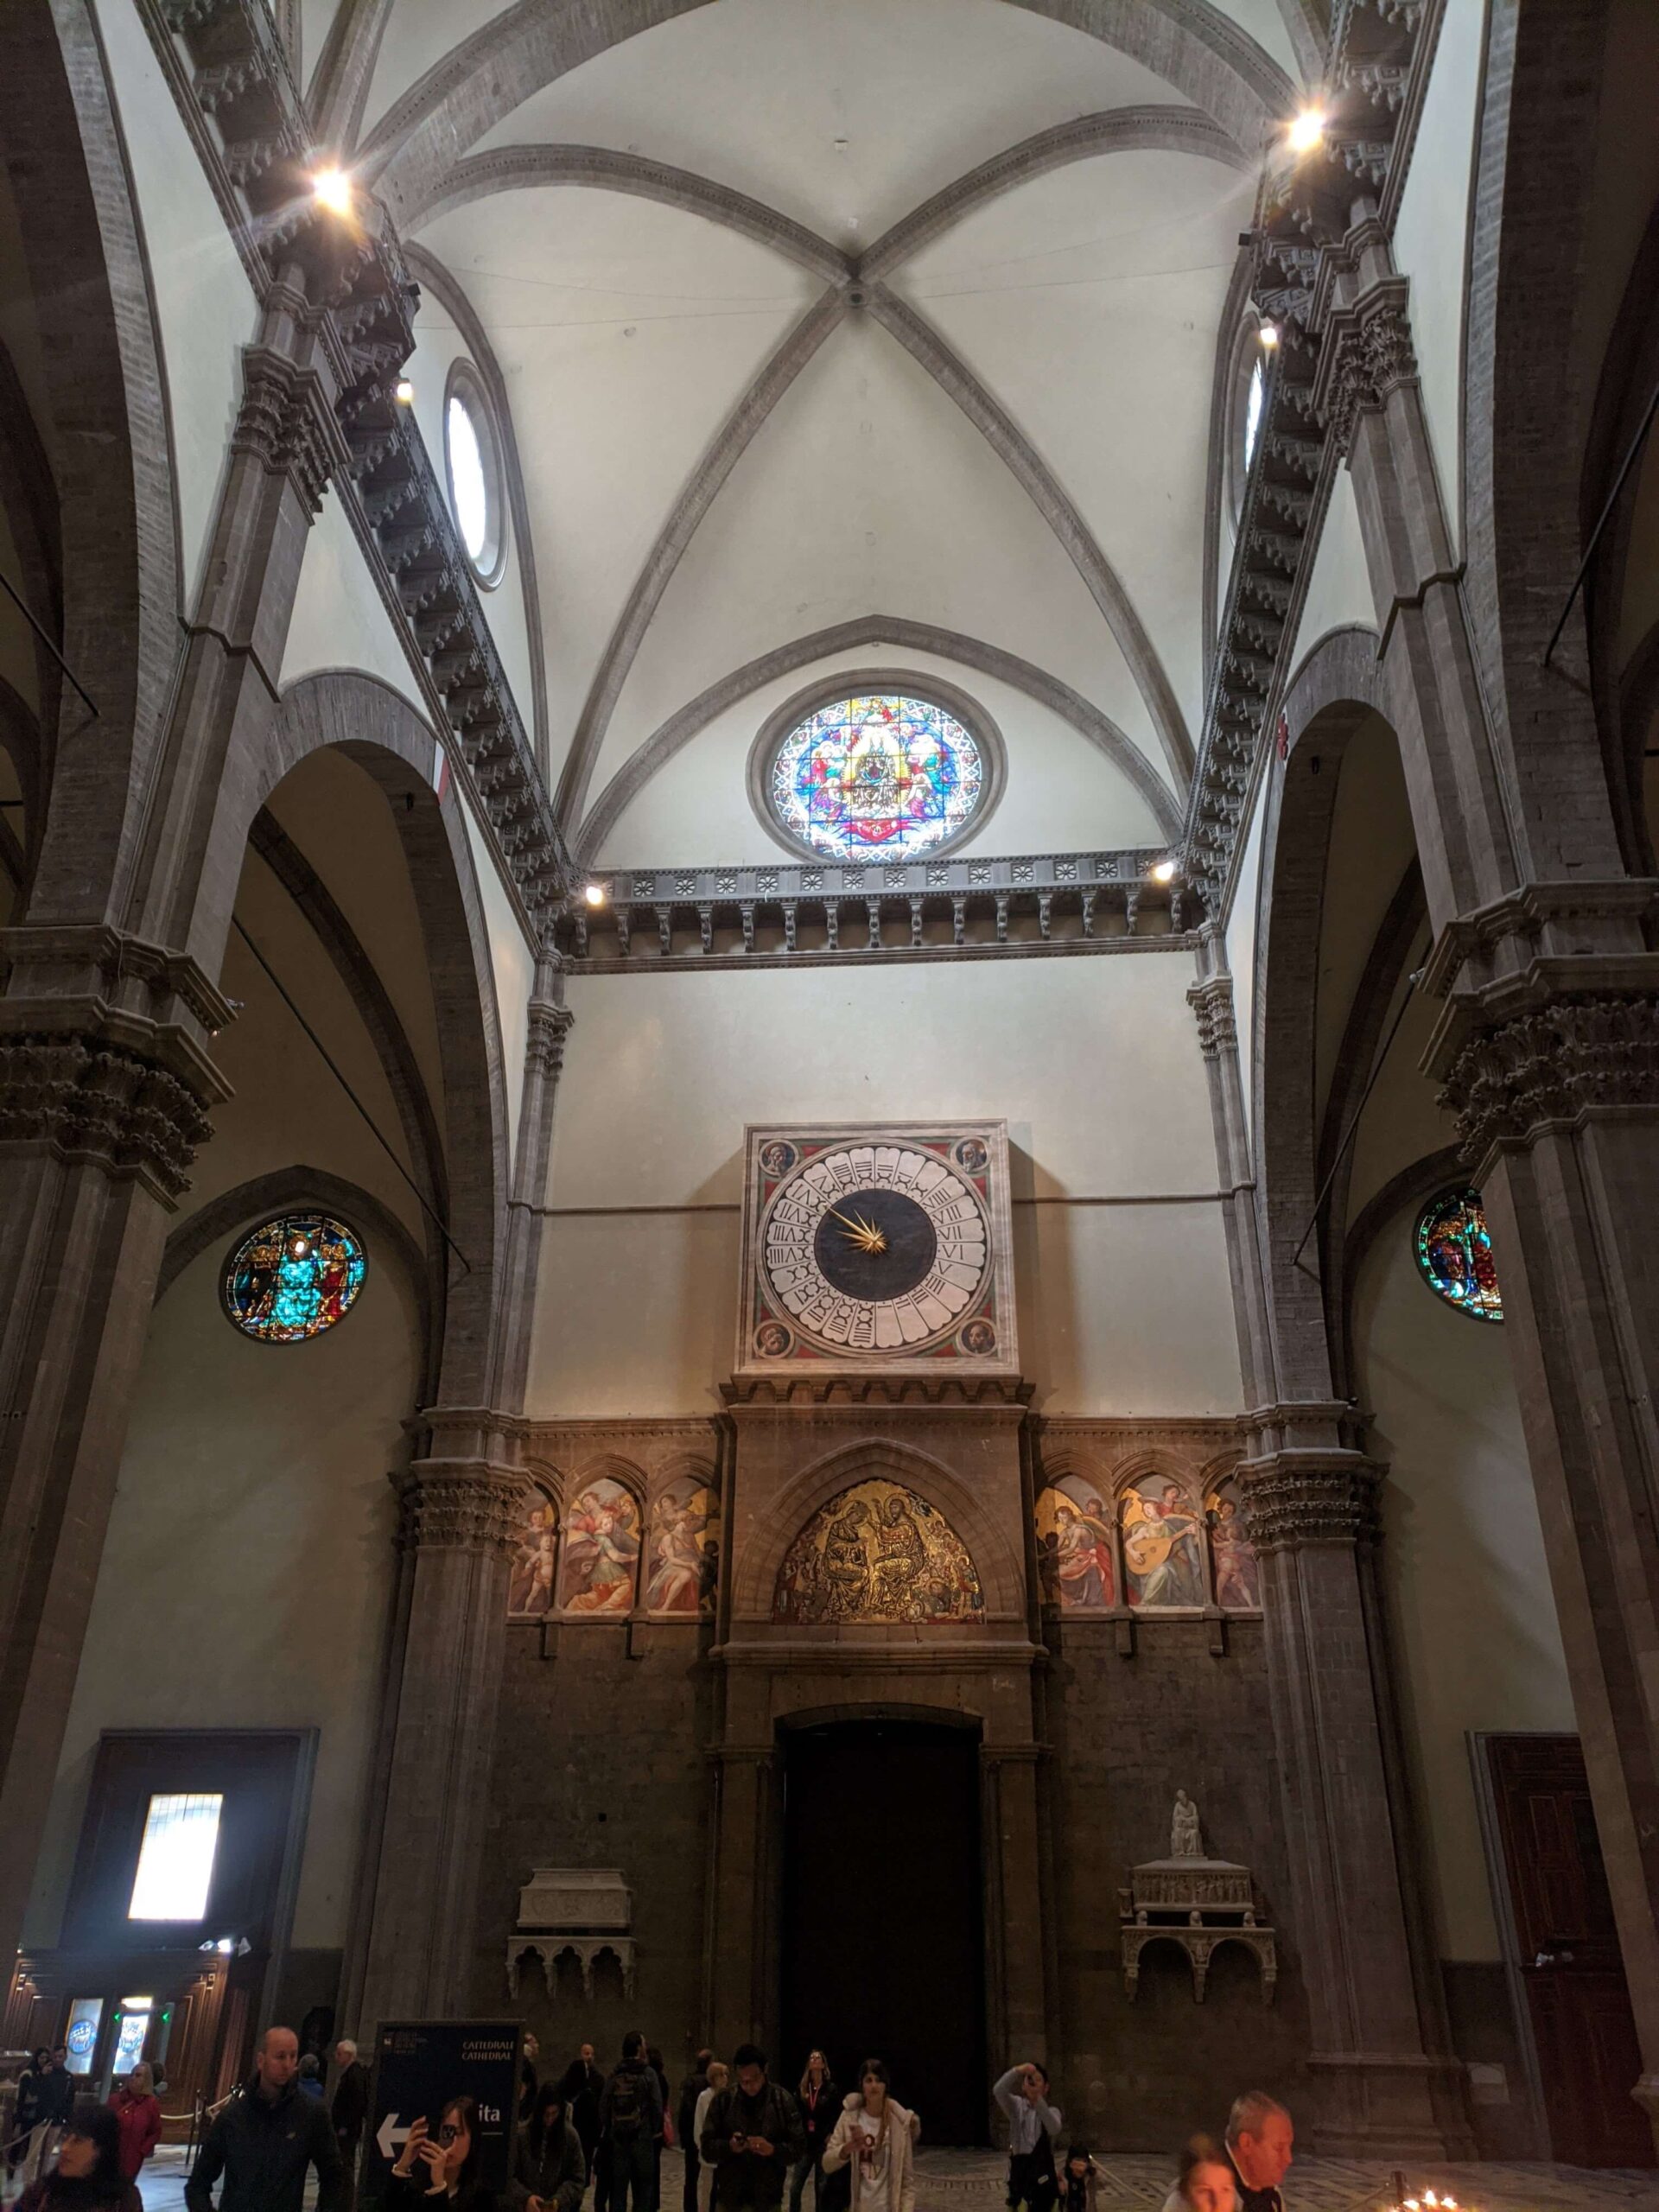 Interior do Duomo de Florença mostrando o vasto espaço da nave, com o relógio de parede acima da entrada principal e vitrais coloridos iluminando o ambiente.